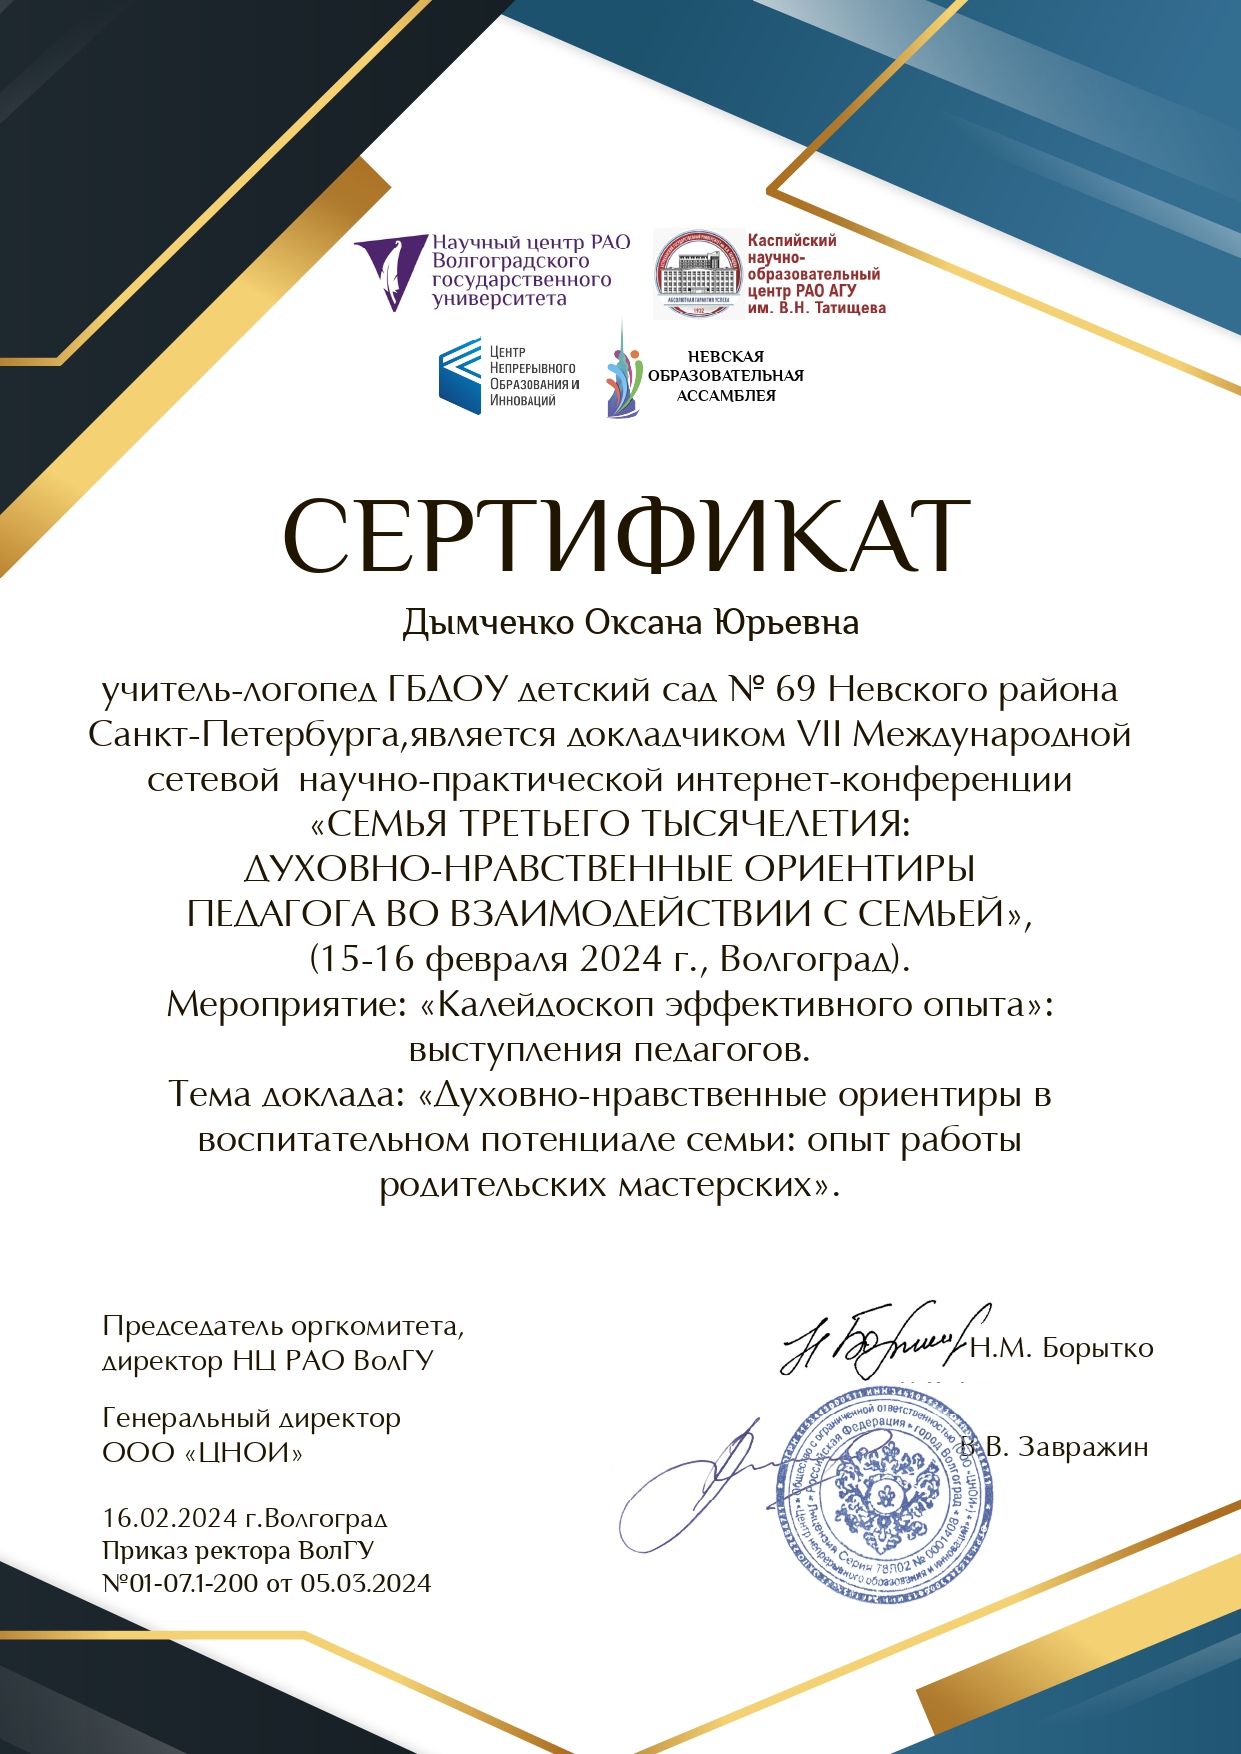 Дымченко Оксана Юрьевна сертификат page 0001